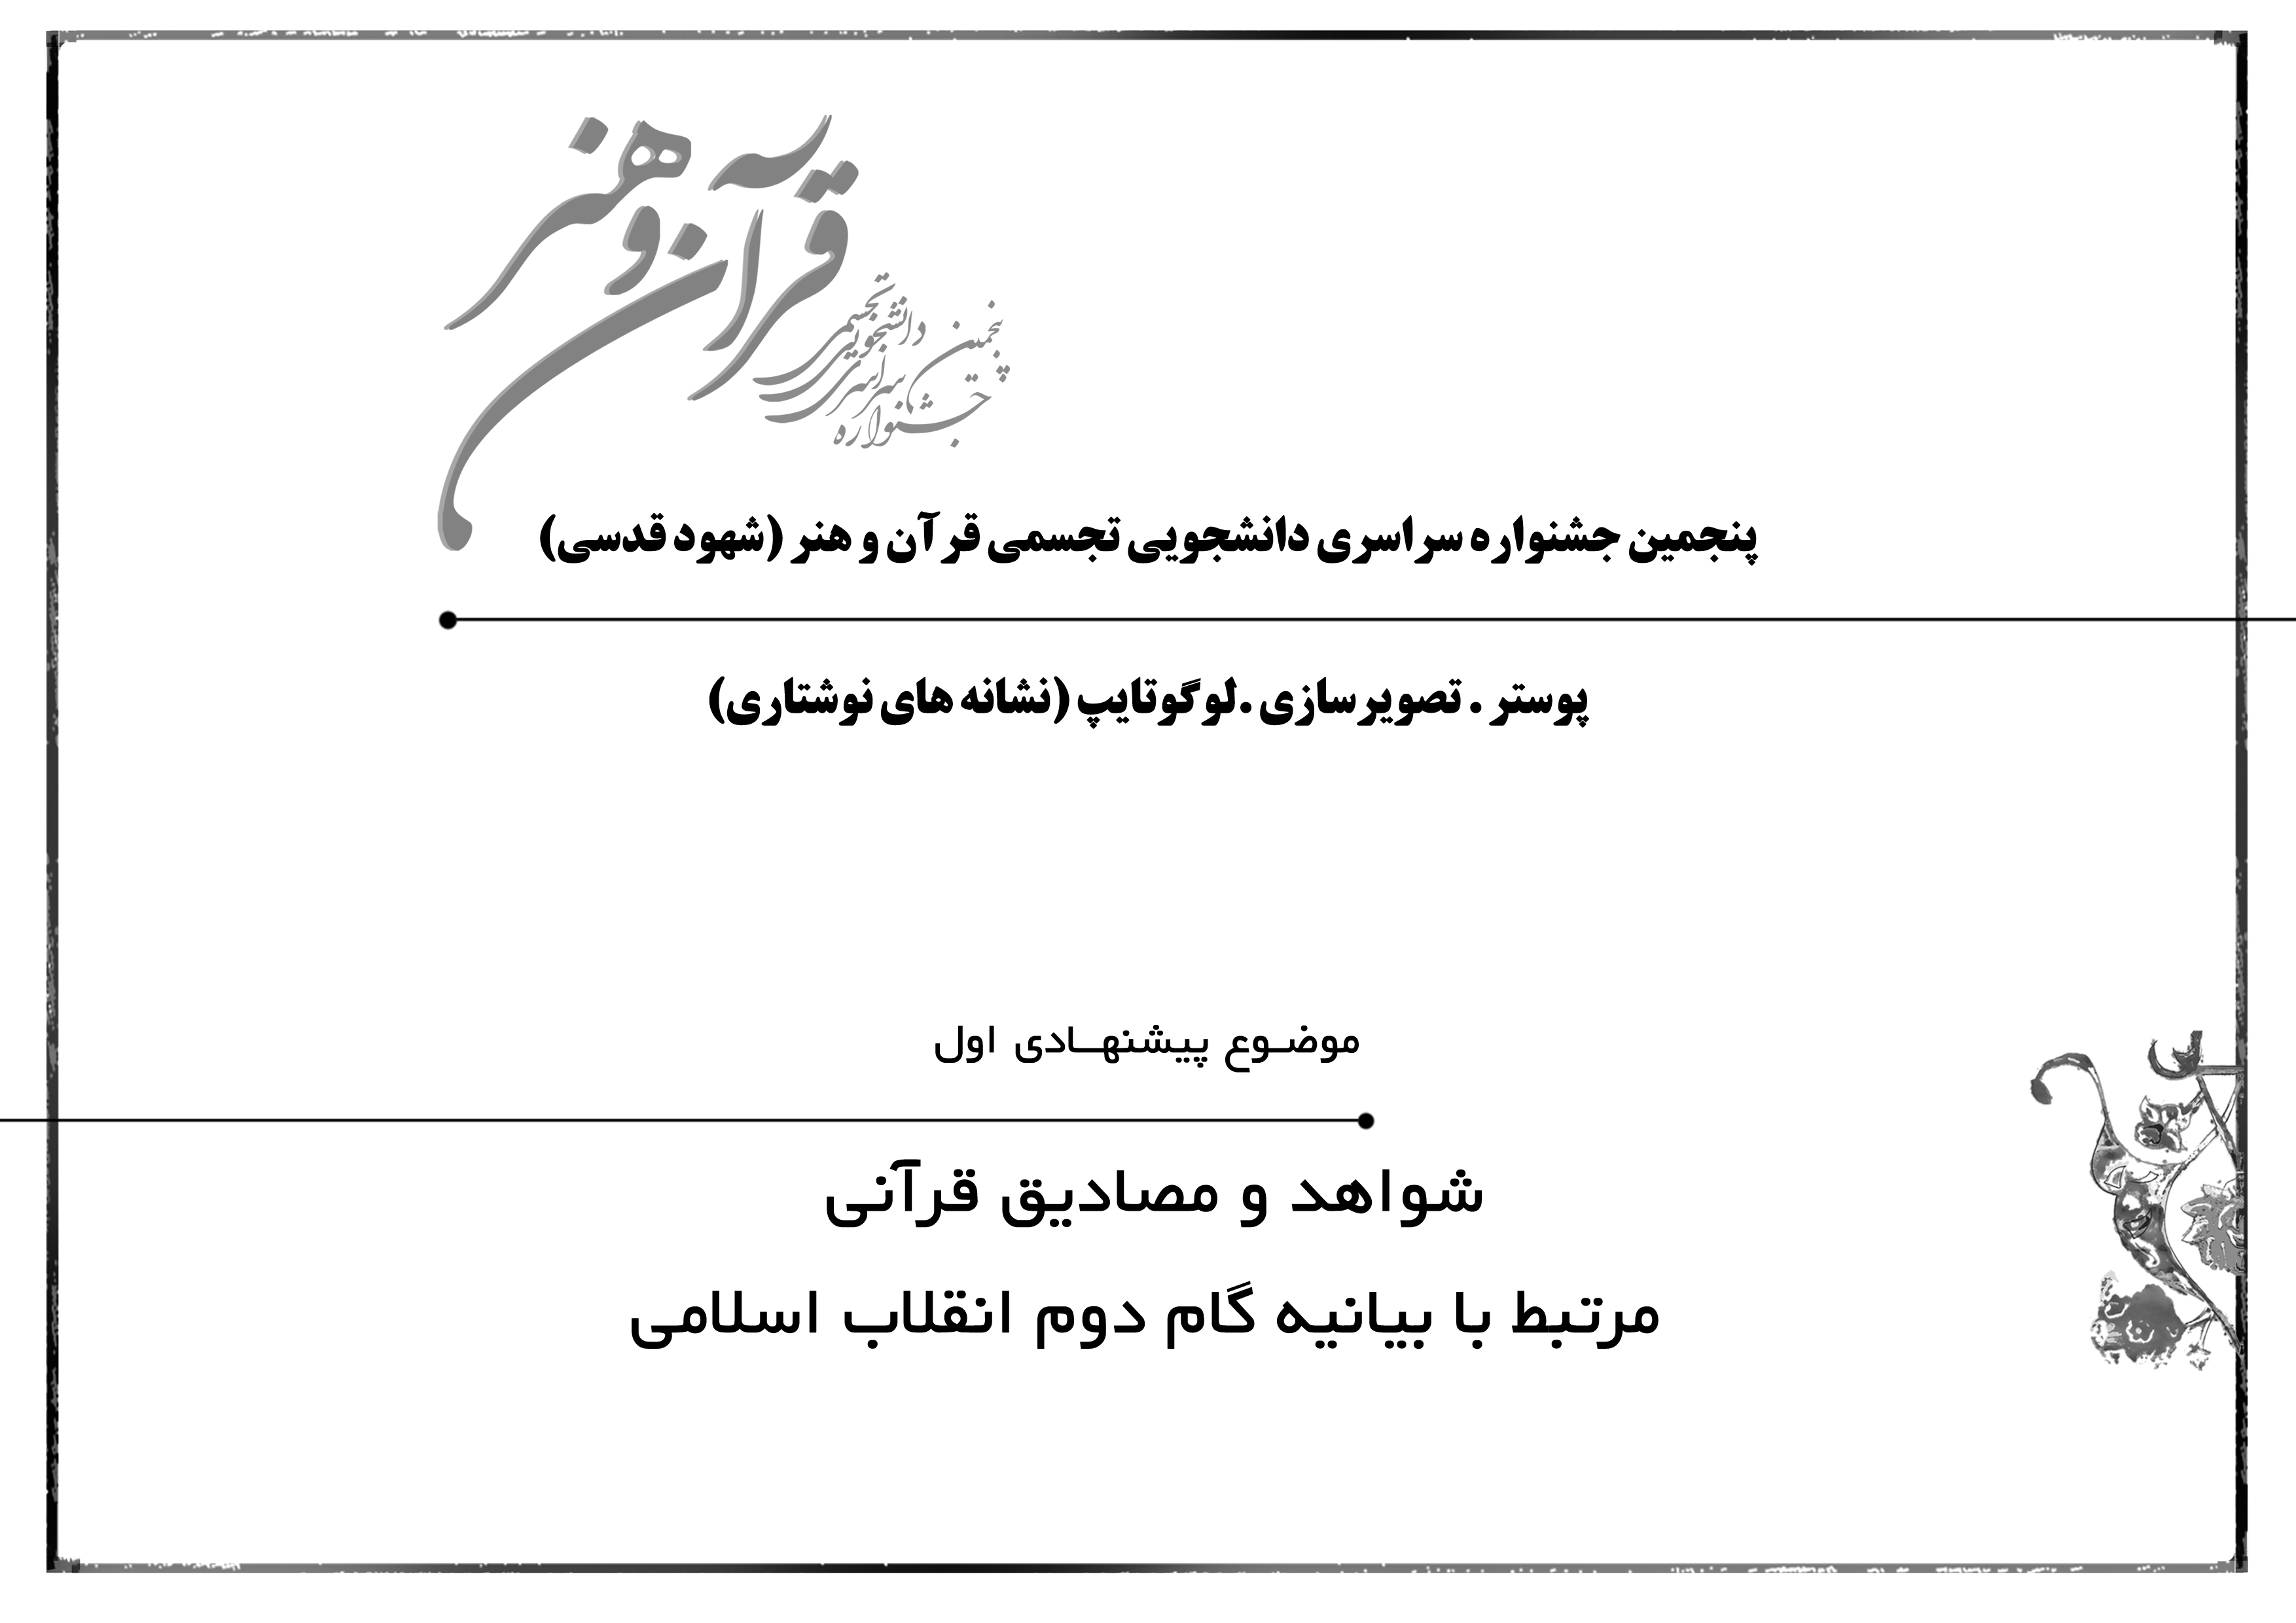 شواهد و مصادیق قرآنی مرتبط با بیانیه گام دوم انقلاب اسلامی